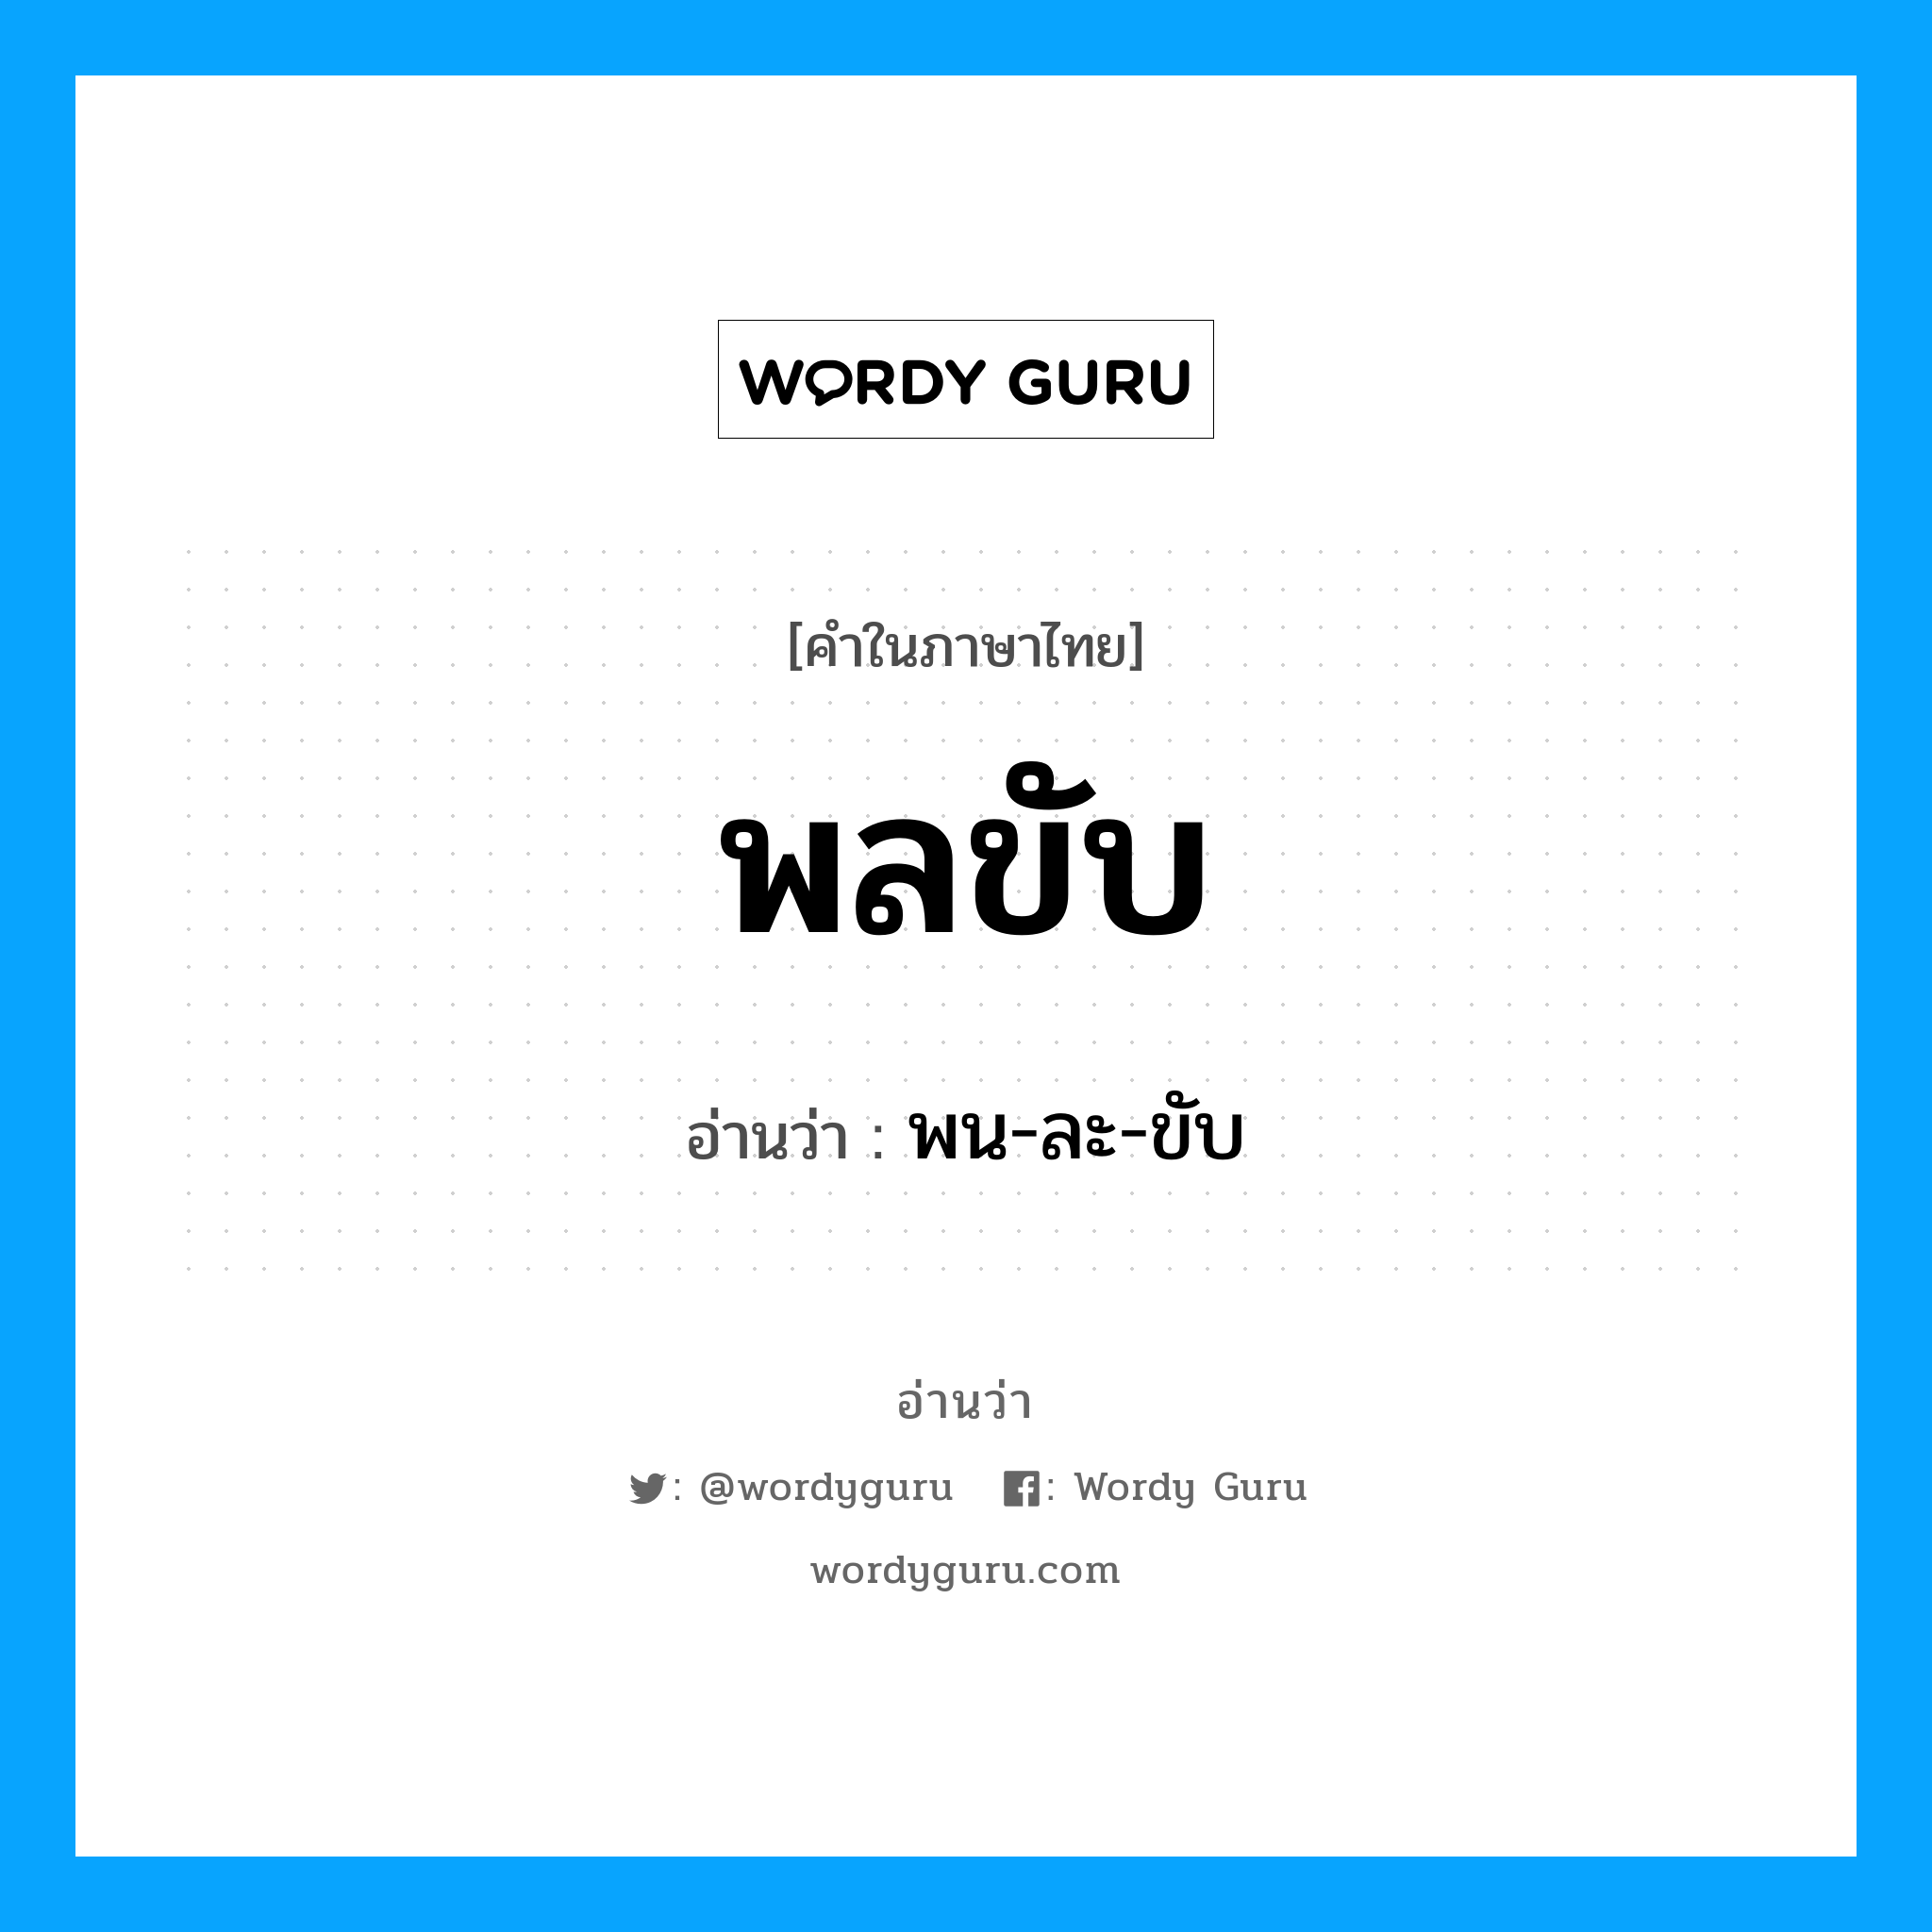 พน-ละ-ขับ เป็นคำอ่านของคำไหน?, คำในภาษาไทย พน-ละ-ขับ อ่านว่า พลขับ